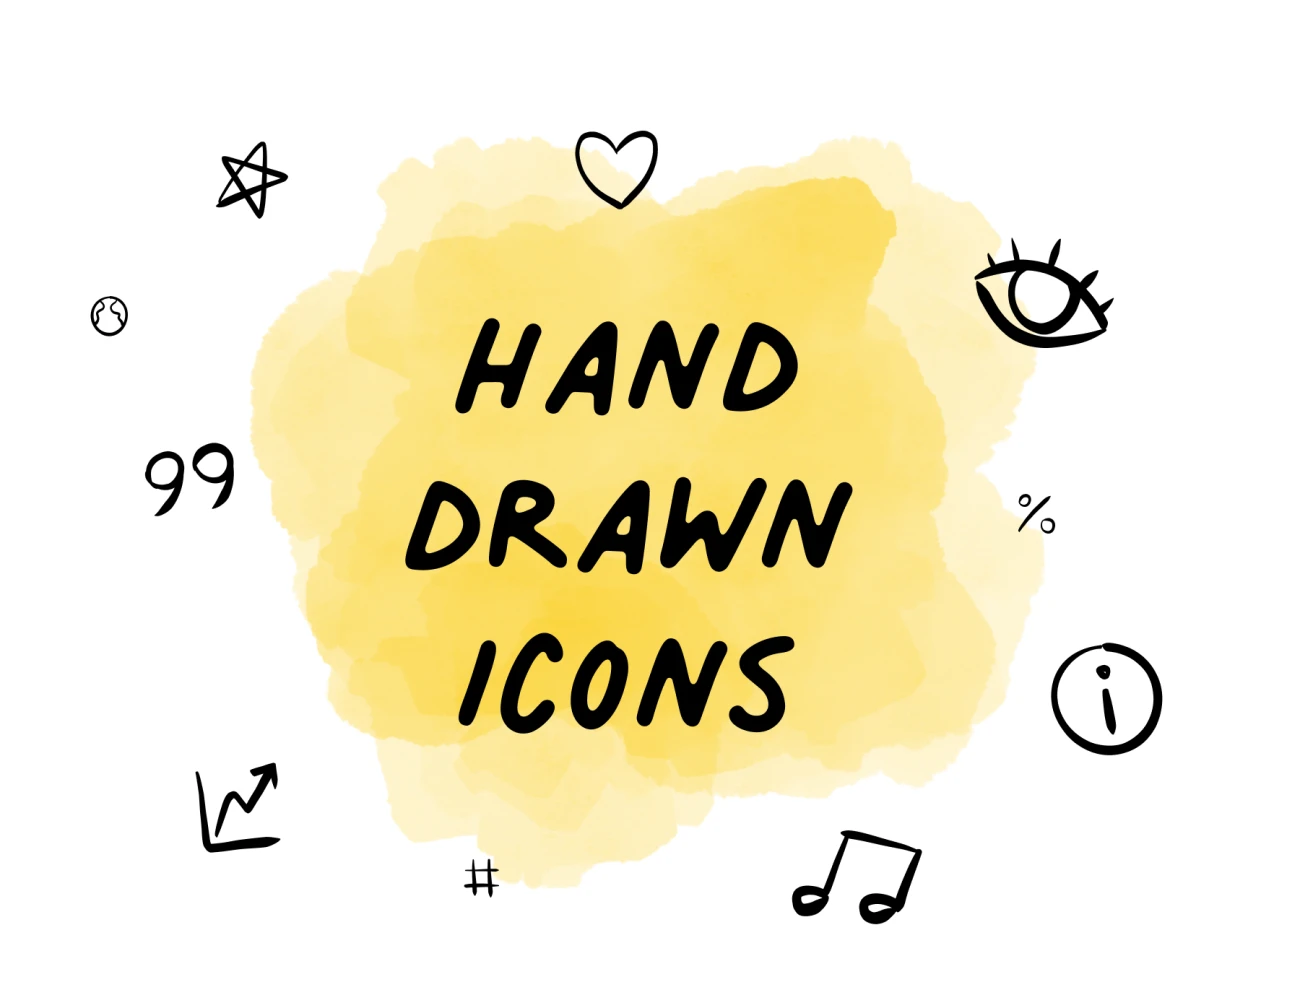 100个精美手绘图标 Hand-drawn icons插图1